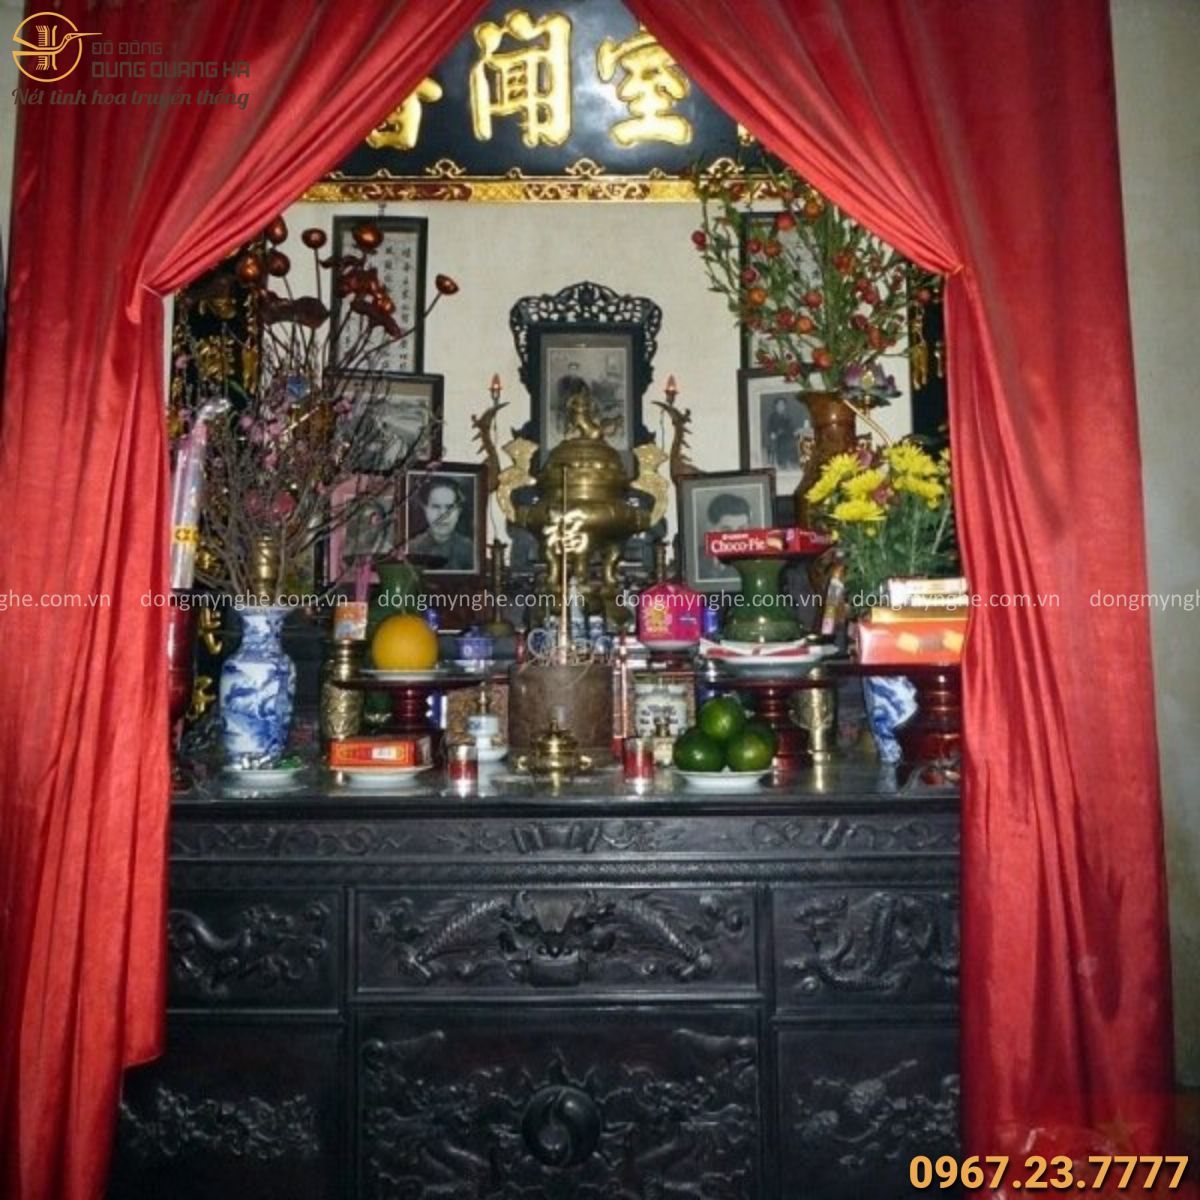 Mua khung ảnh bàn thờ quận Tân Phú  Chọn ảnh thờ đúng chuẩn